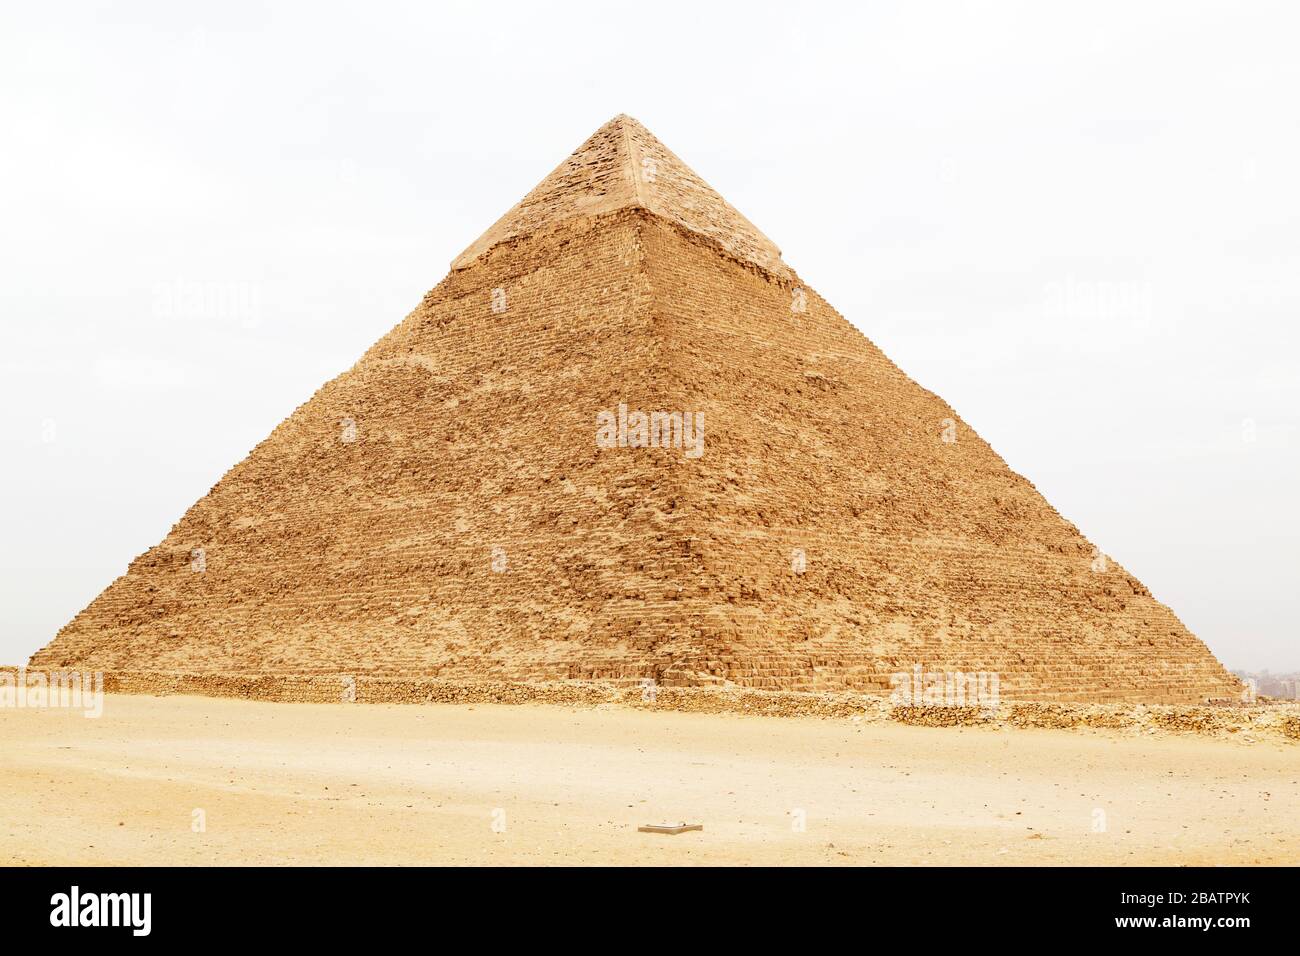 La Pyramide de Khufu, également connue sous le nom de Pyramide de Cheops, sur le plateau de Giza au Caire, en Égypte. Banque D'Images